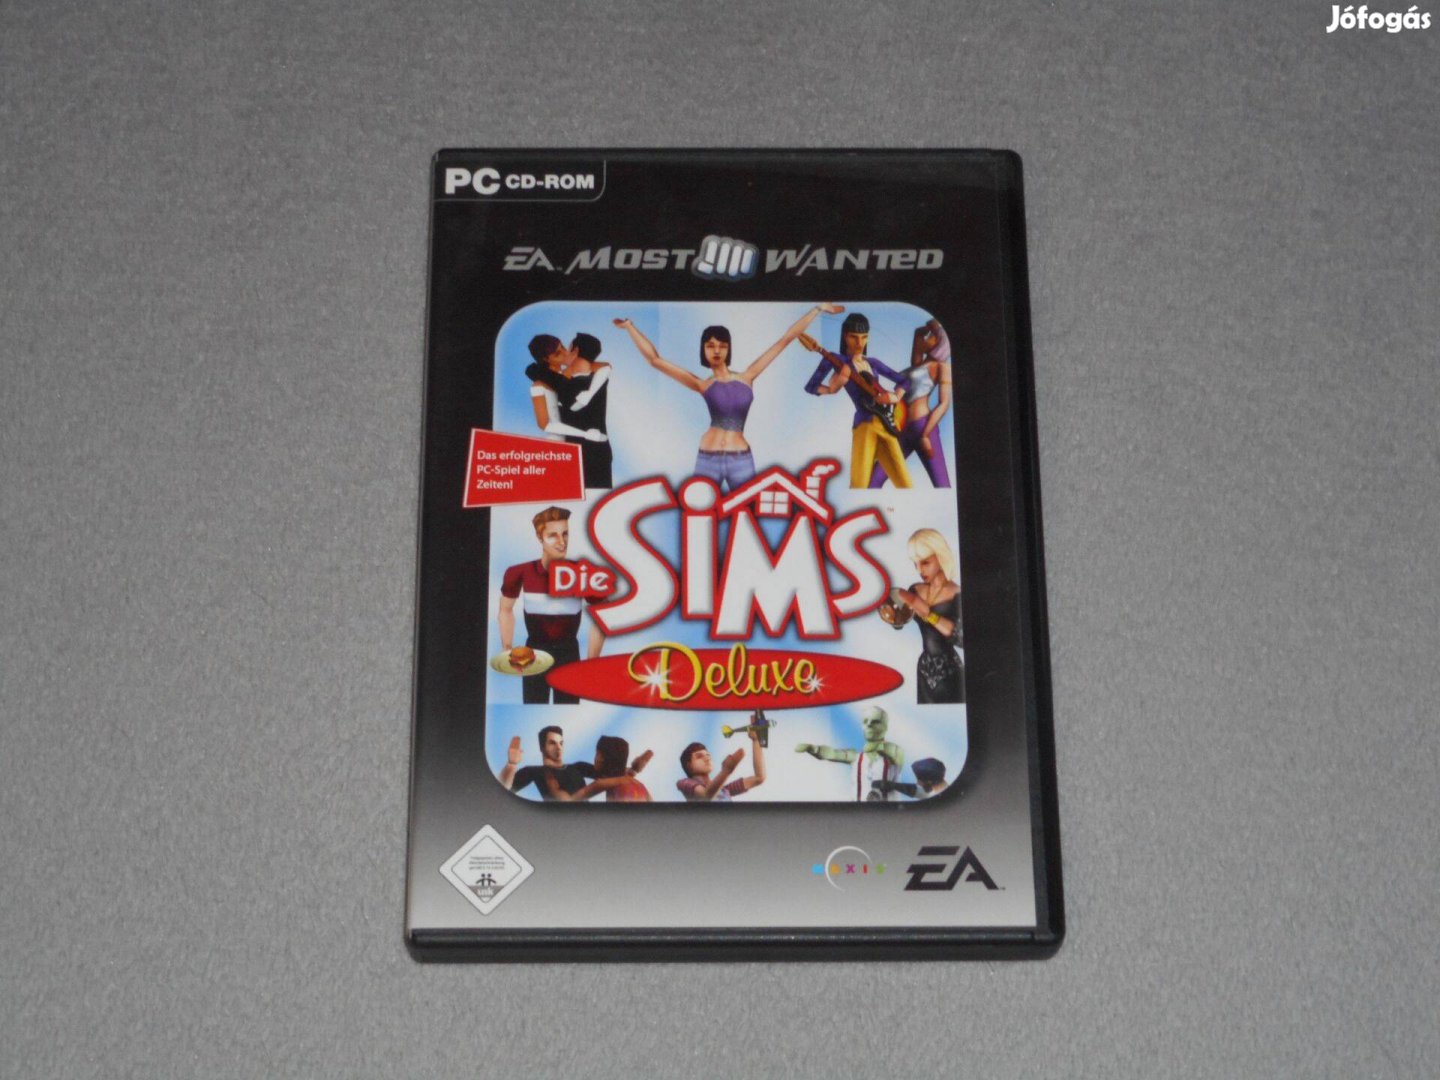 The Sims Deluxe Edition Alapj + Livin' It Up Angol / Német PC játék